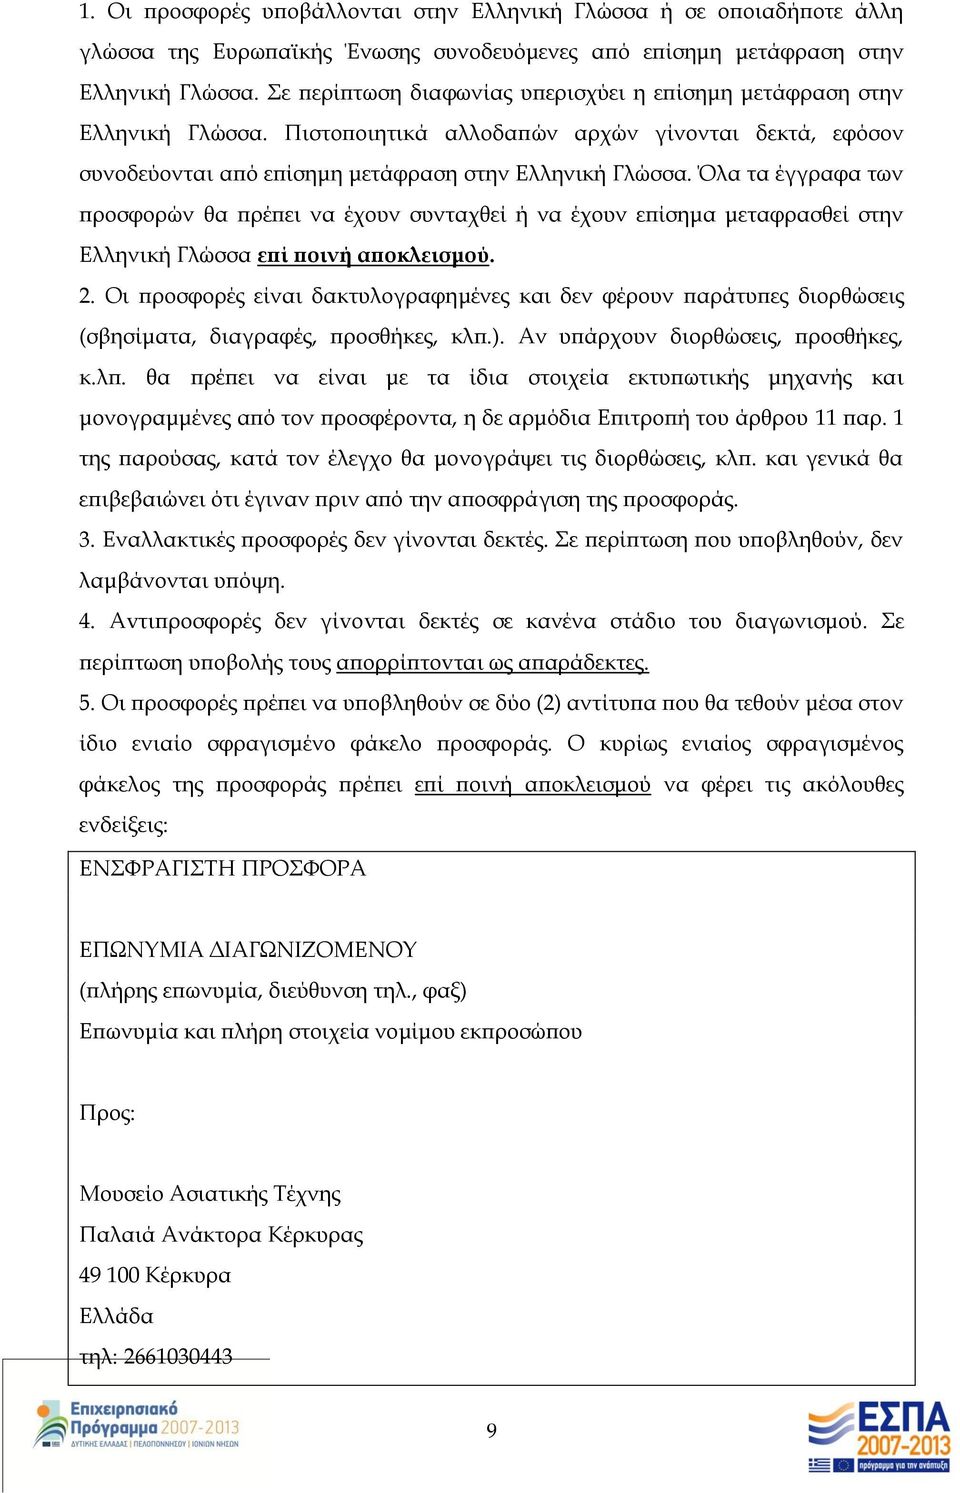 Όλα τα έγγραφα των προσφορών θα πρέπει να έχουν συνταχθεί ή να έχουν επίσημα μεταφρασθεί στην Ελληνική Γλώσσα επί ποινή αποκλεισμού. 2.